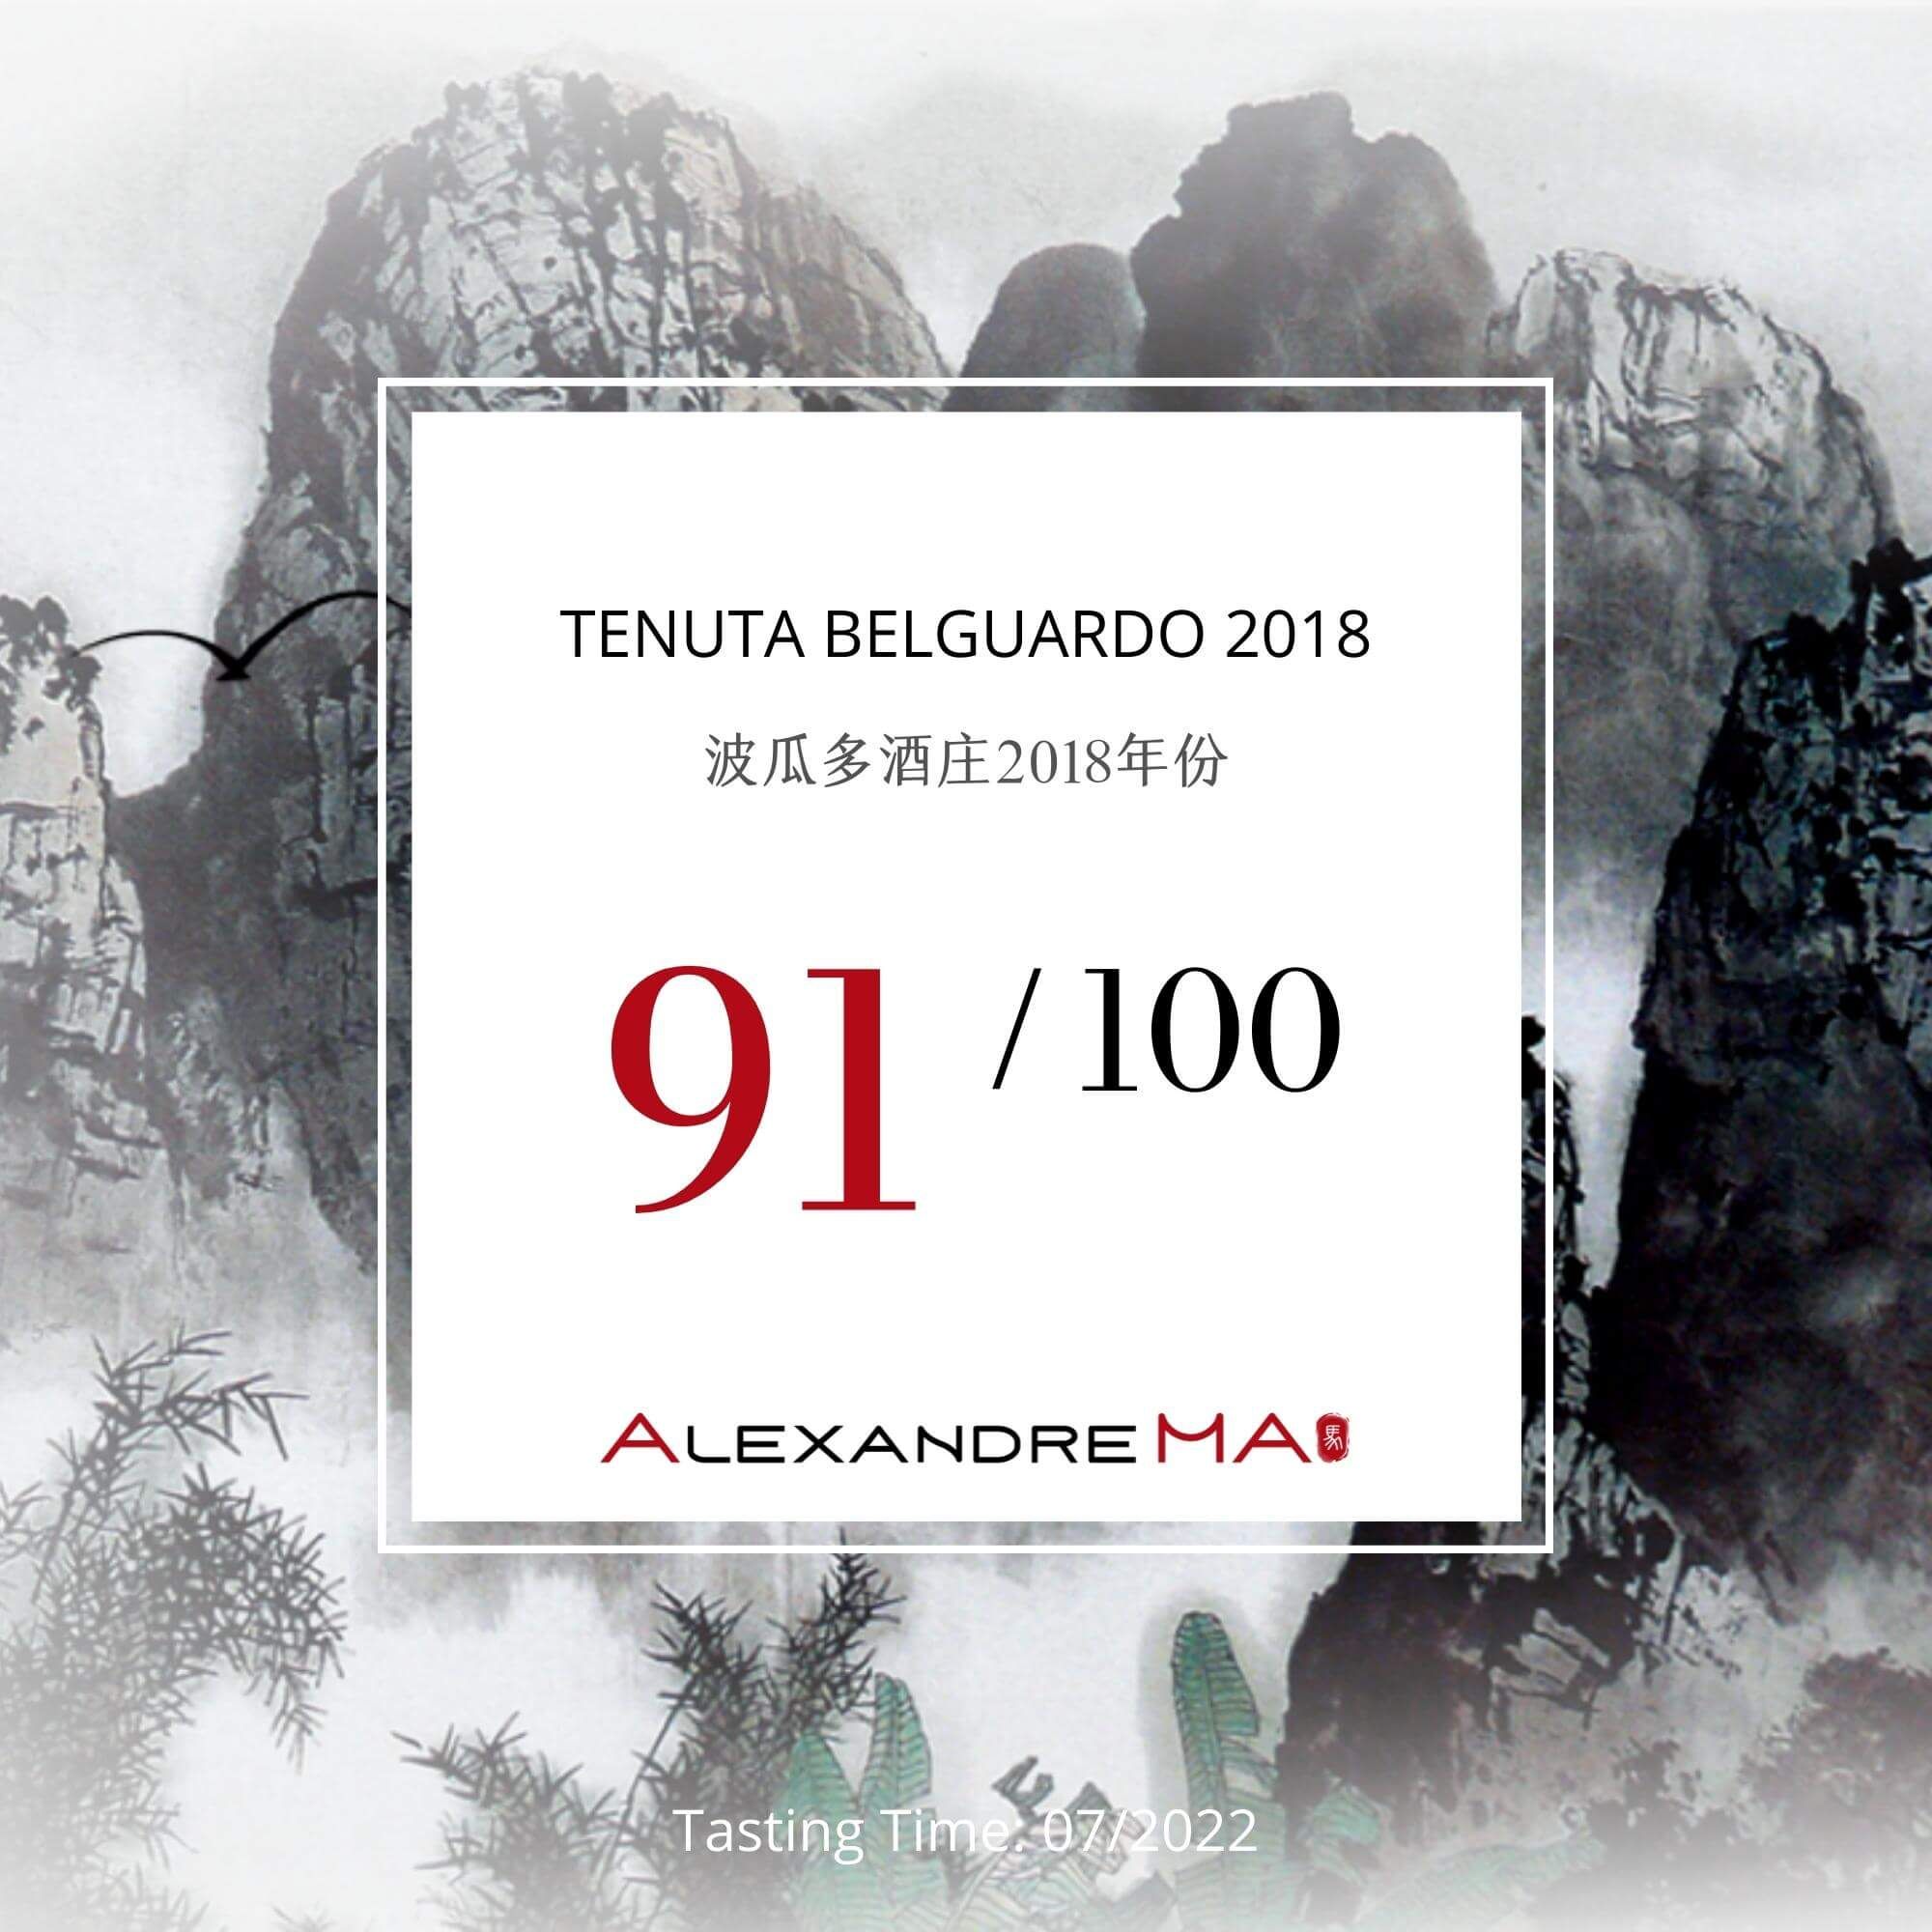 Tenuta Belguardo 2018 - Alexandre MA